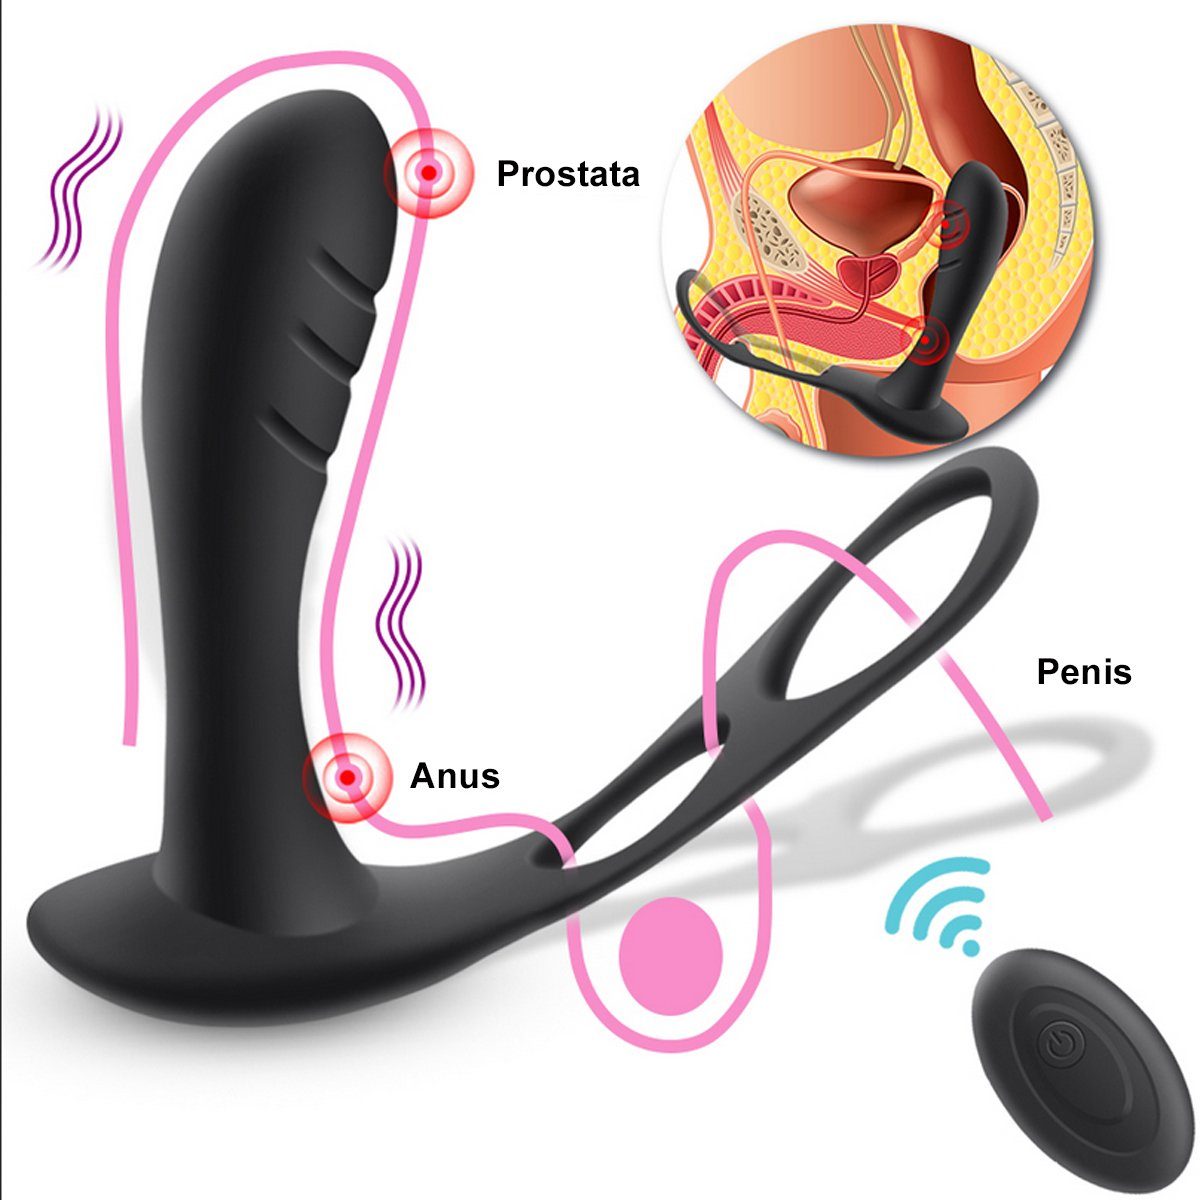 10 Prostata Hodenring, Penisring Prostata-Rotator über mit TPFSecret Control und wiederaufladbar, Analvibrator - Stimulator Remote ergonomischer mit USB verschiedene Vibrationsmodi